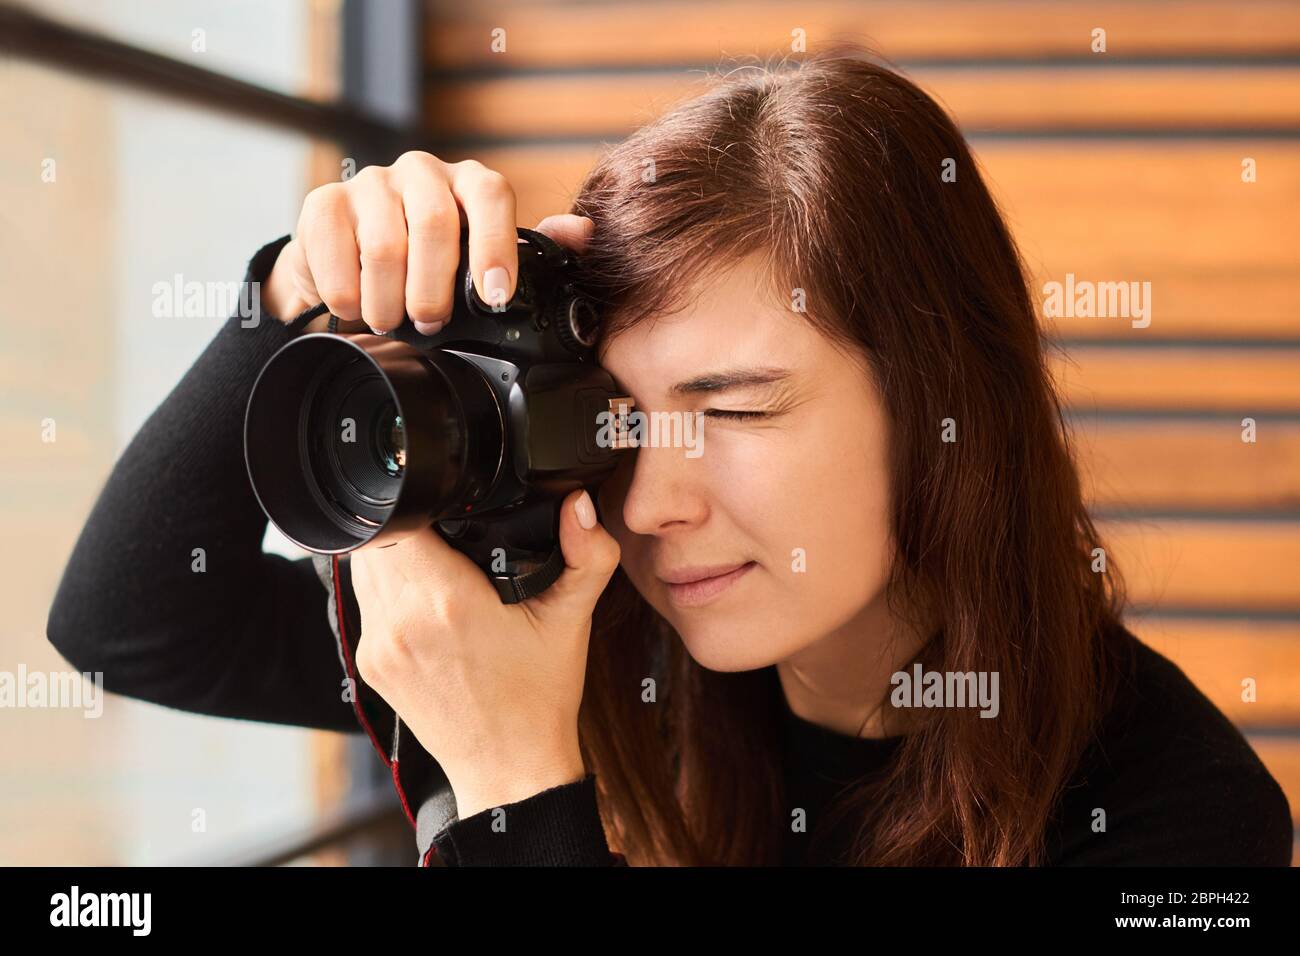 mujer fotógrafa haciendo fotos con cámara fotográfica en sesión fotográfica profesional con luz de día Foto de stock